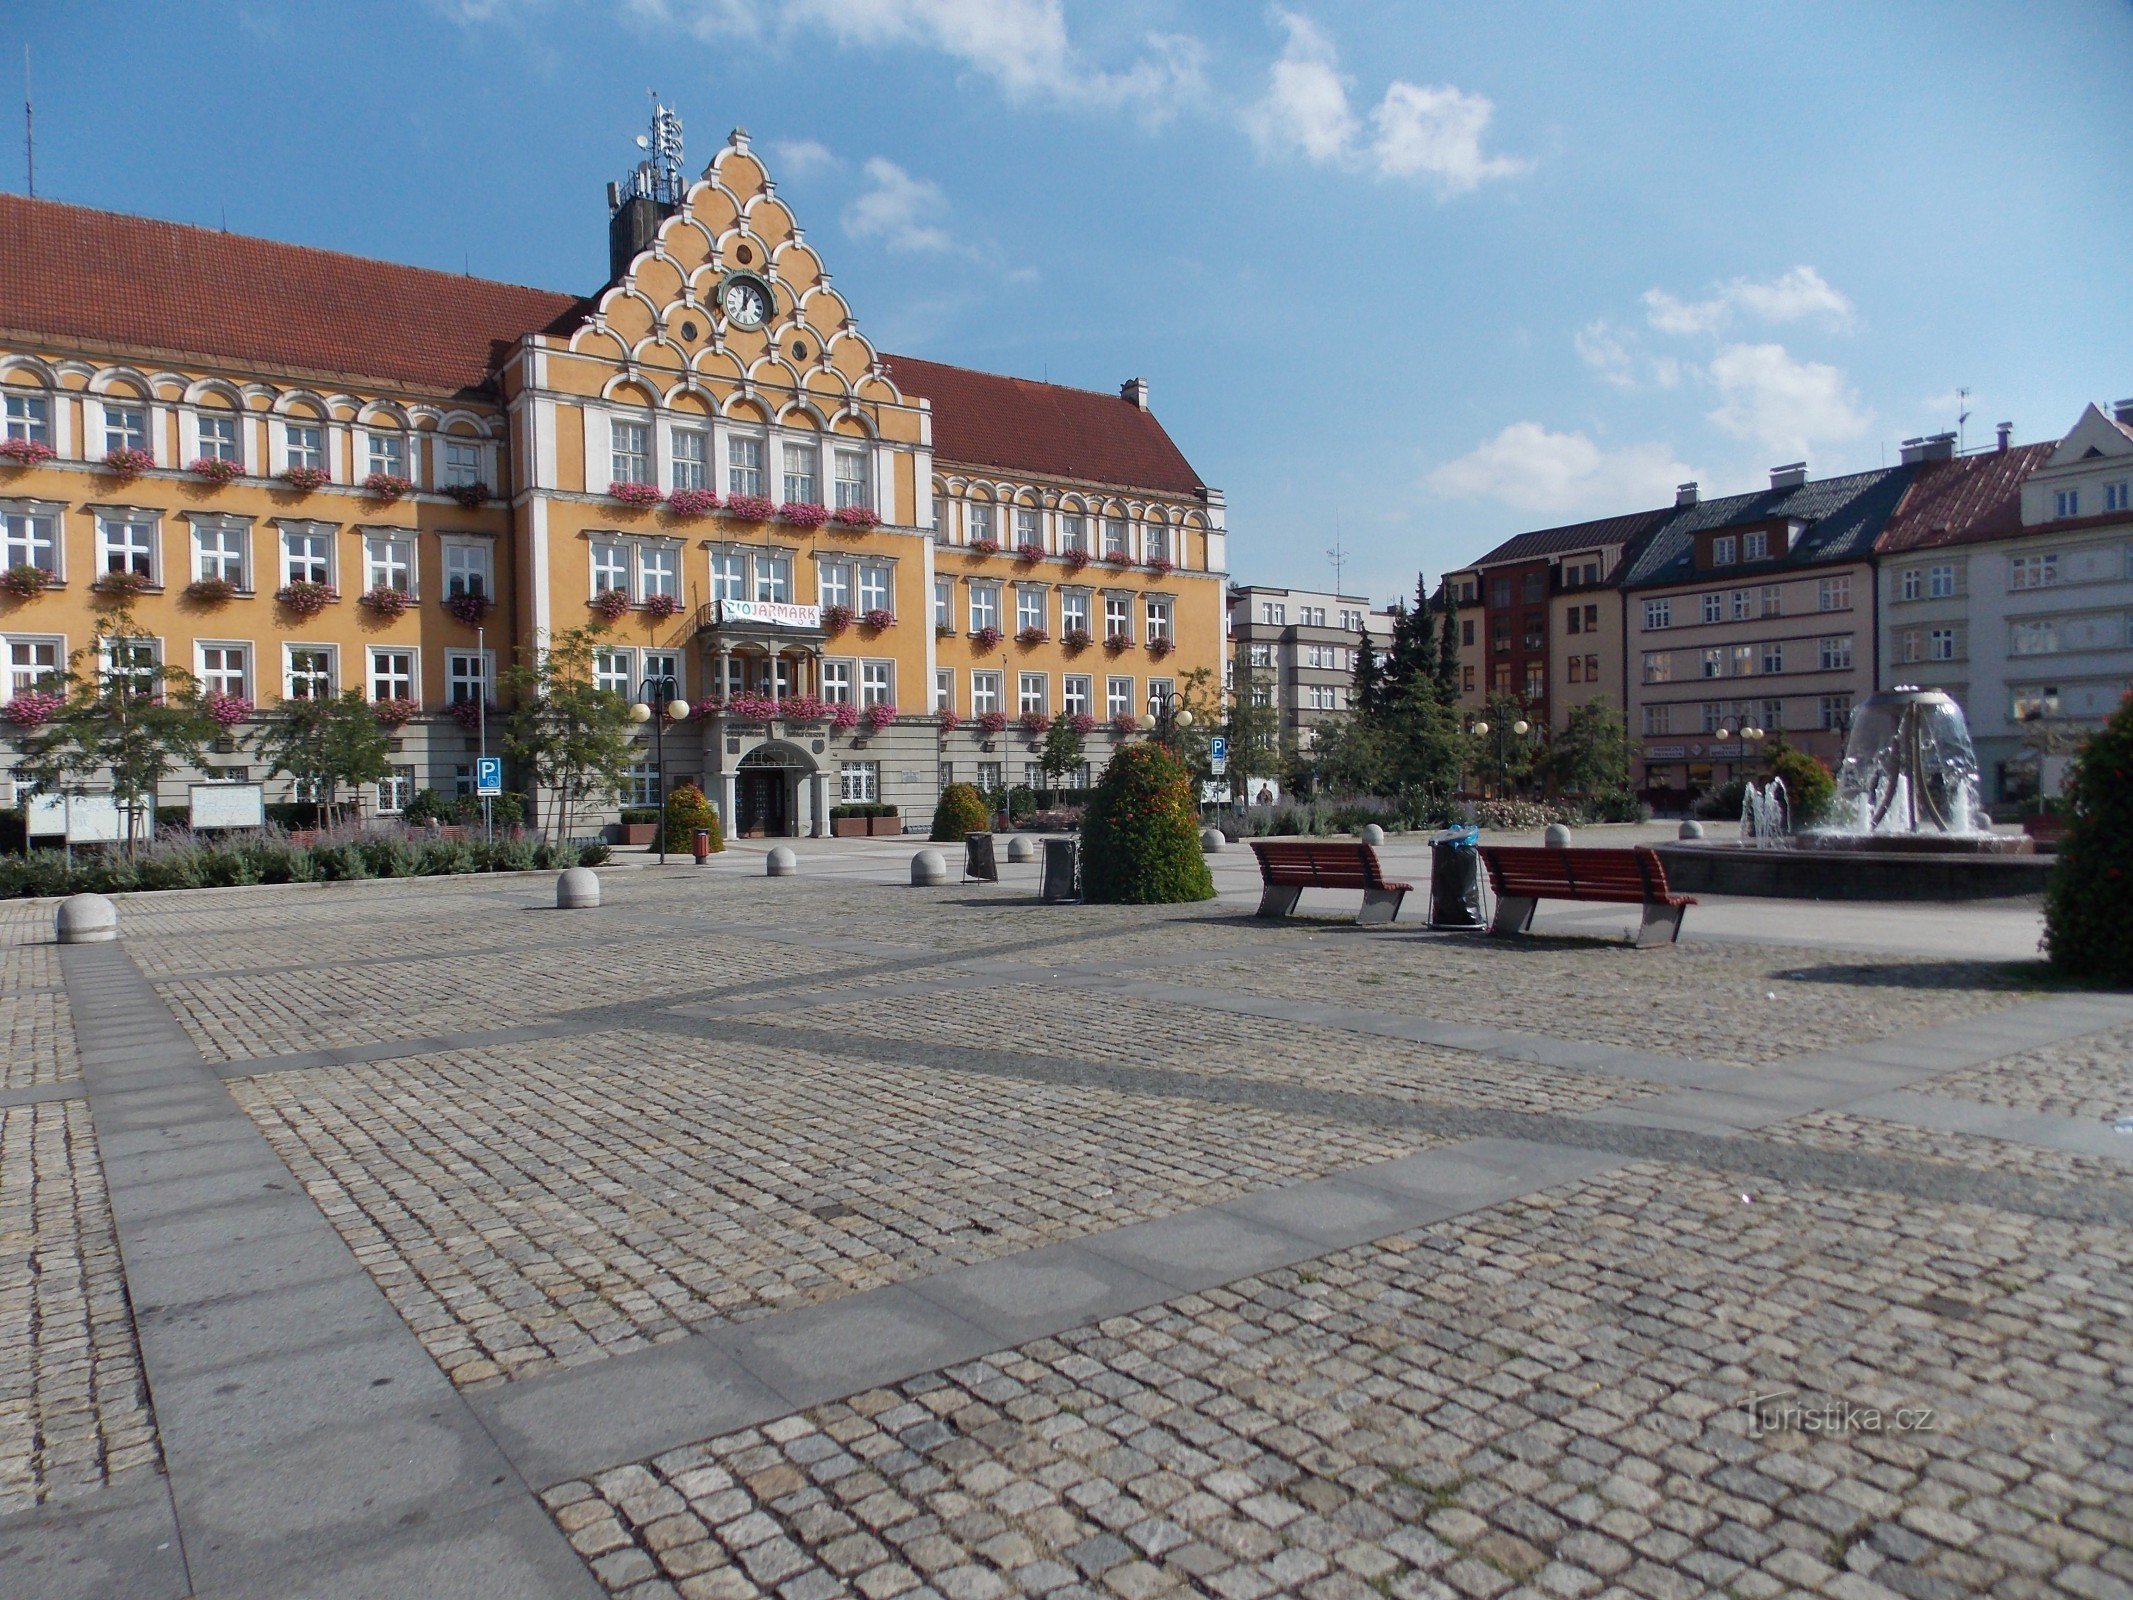 Caracteristica dominantă a pieței Těšín este clădirea primăriei